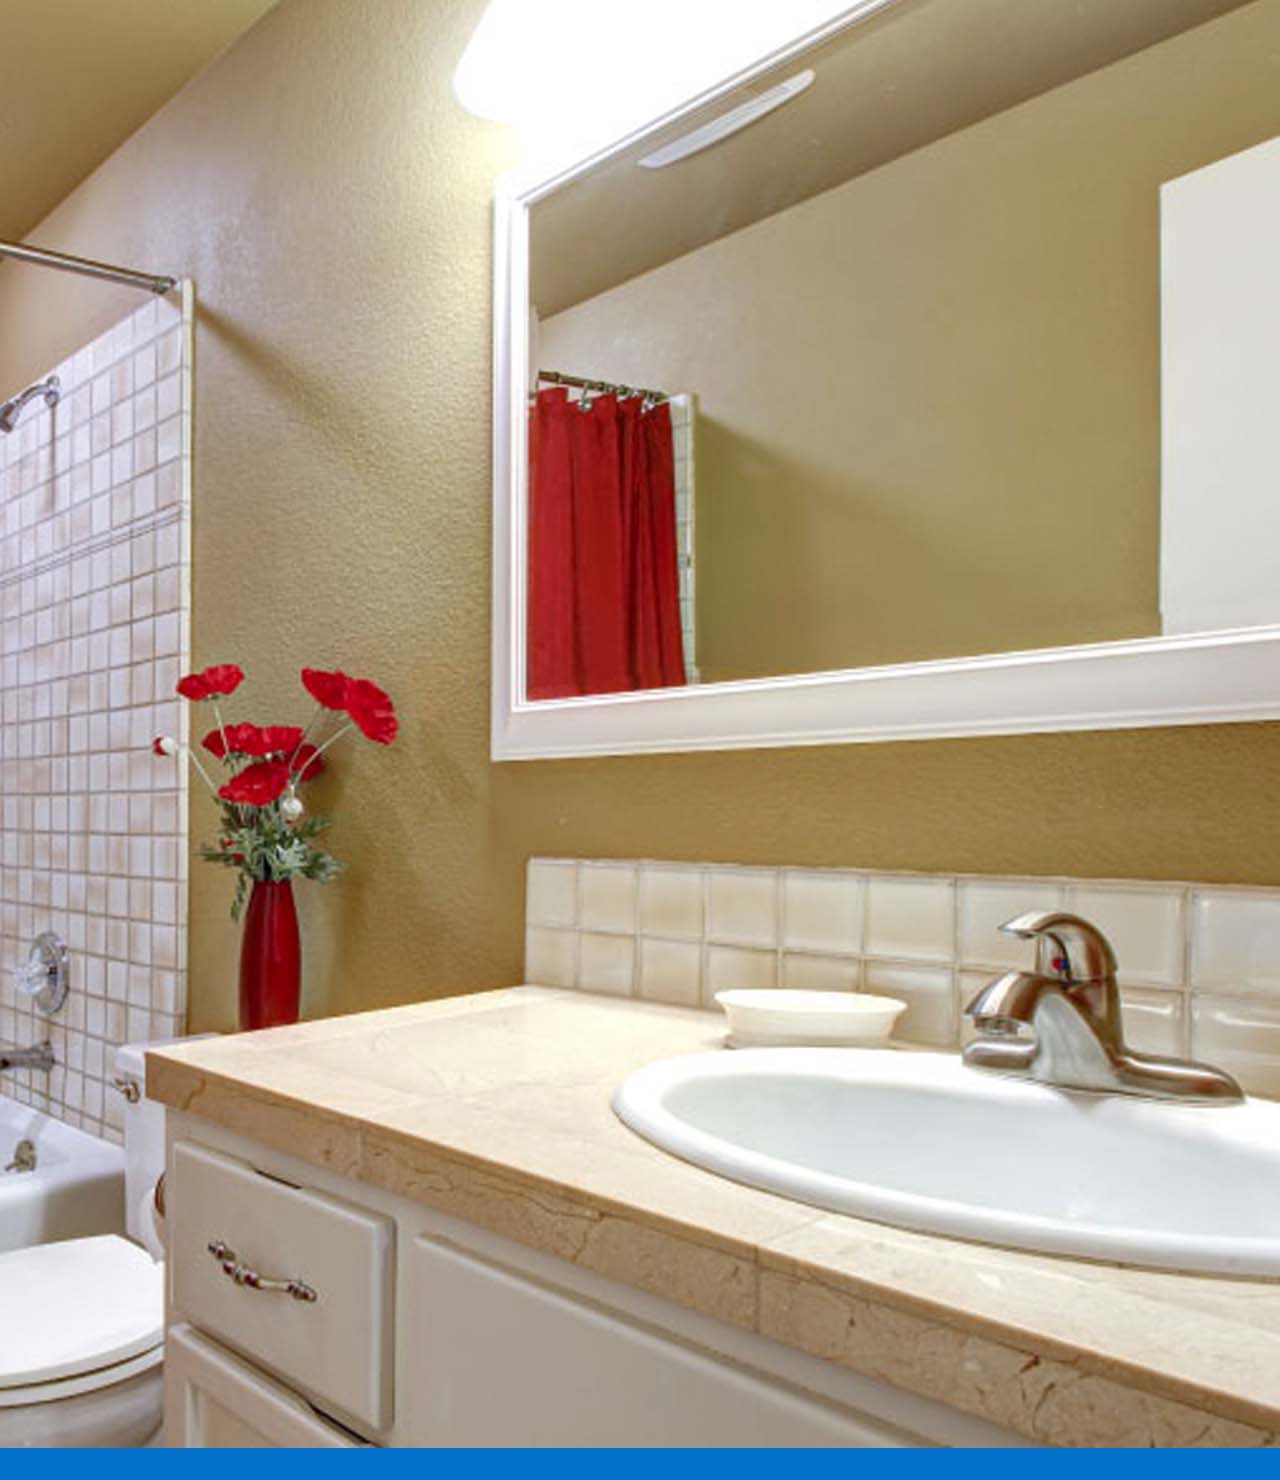 Accesorios para organizar y decorar tu cuarto de baño